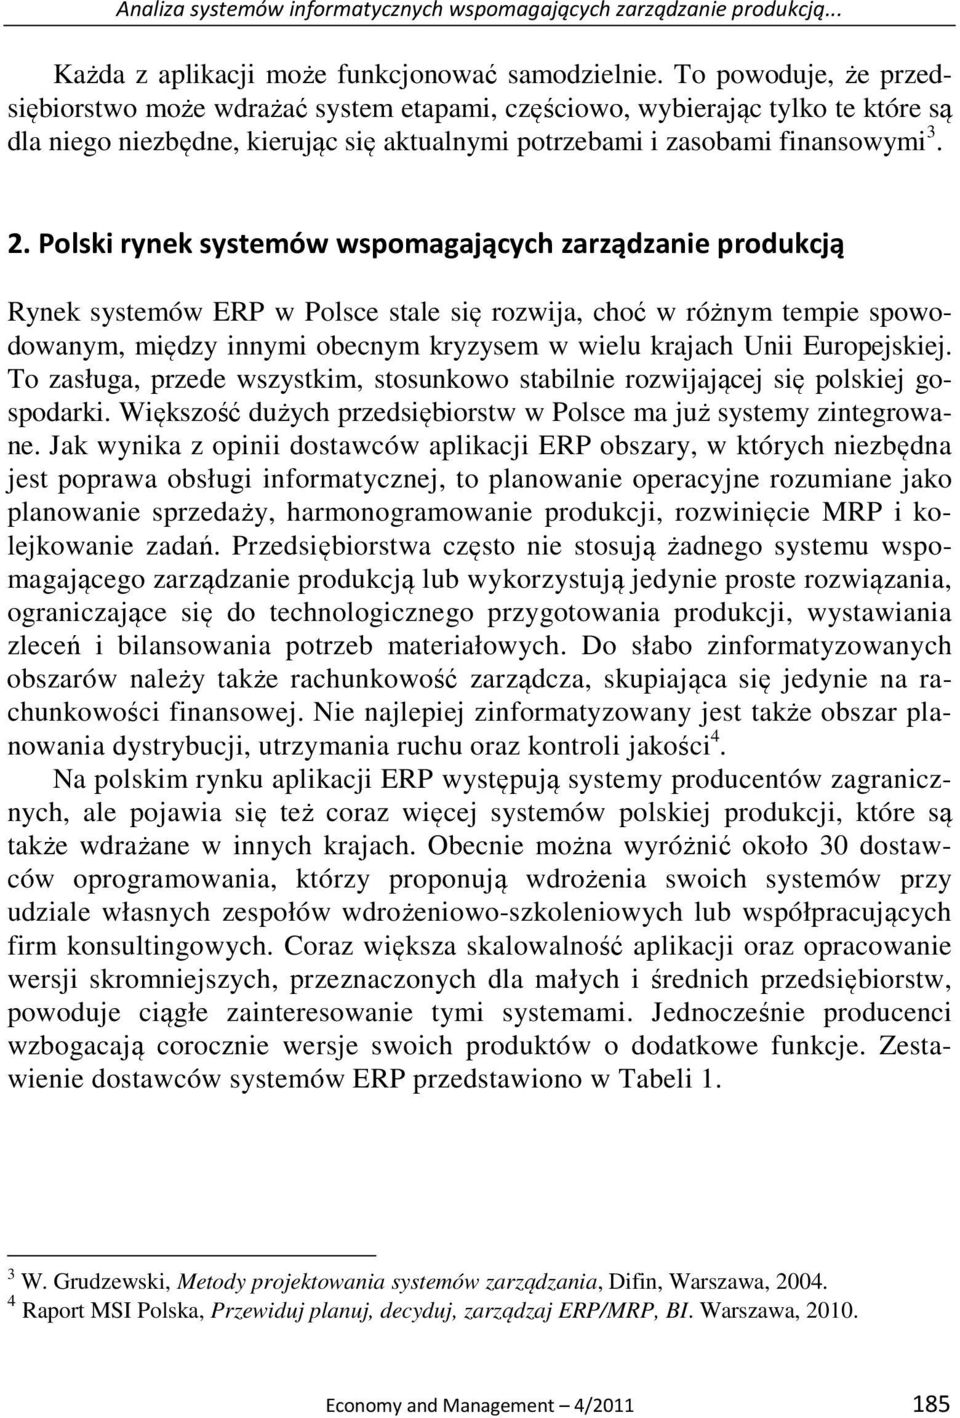 Polski rynek systemów wspomagających zarządzanie produkcją Rynek systemów ERP w Polsce stale się rozwija, choć w różnym tempie spowodowanym, między innymi obecnym kryzysem w wielu krajach Unii